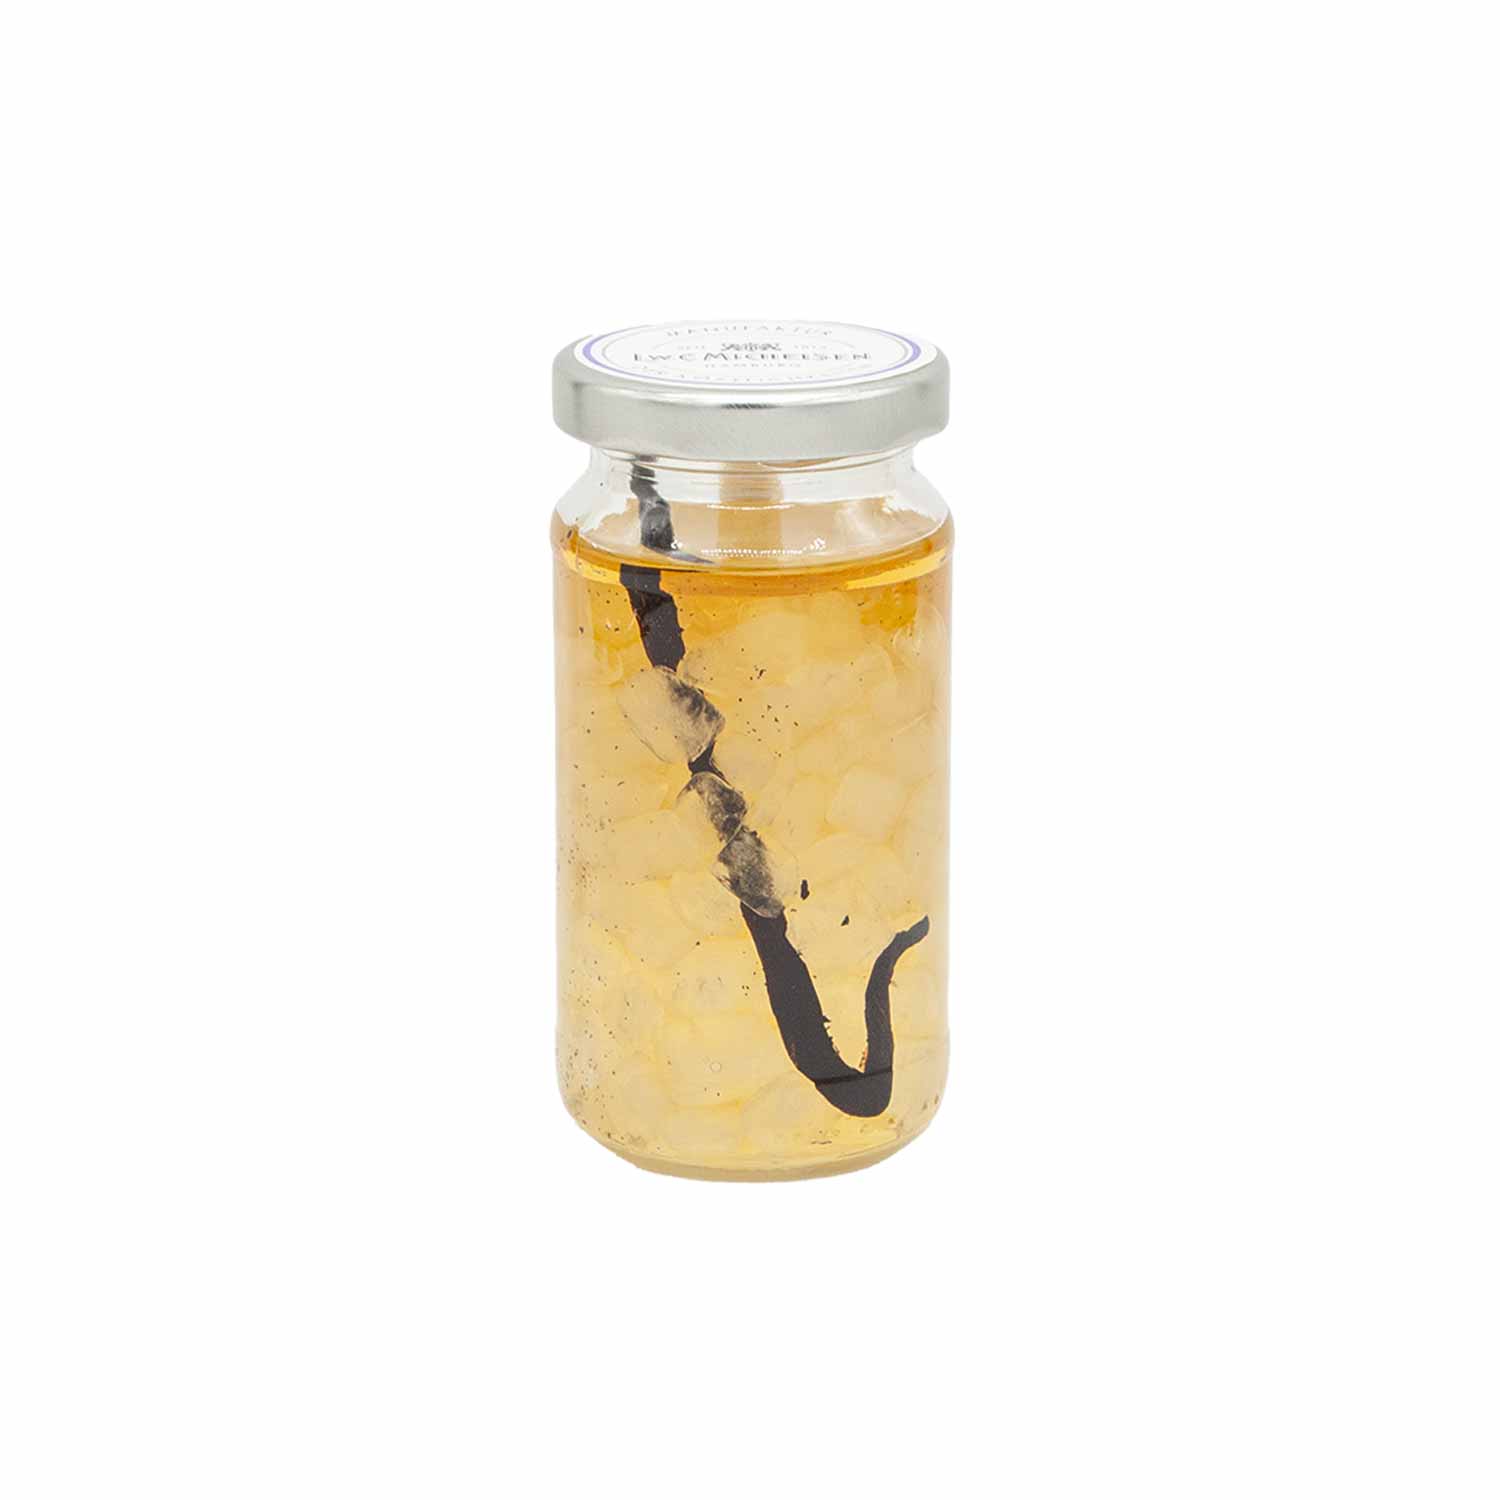 Rum-Kandis mit Vanille-Stange, 250 g